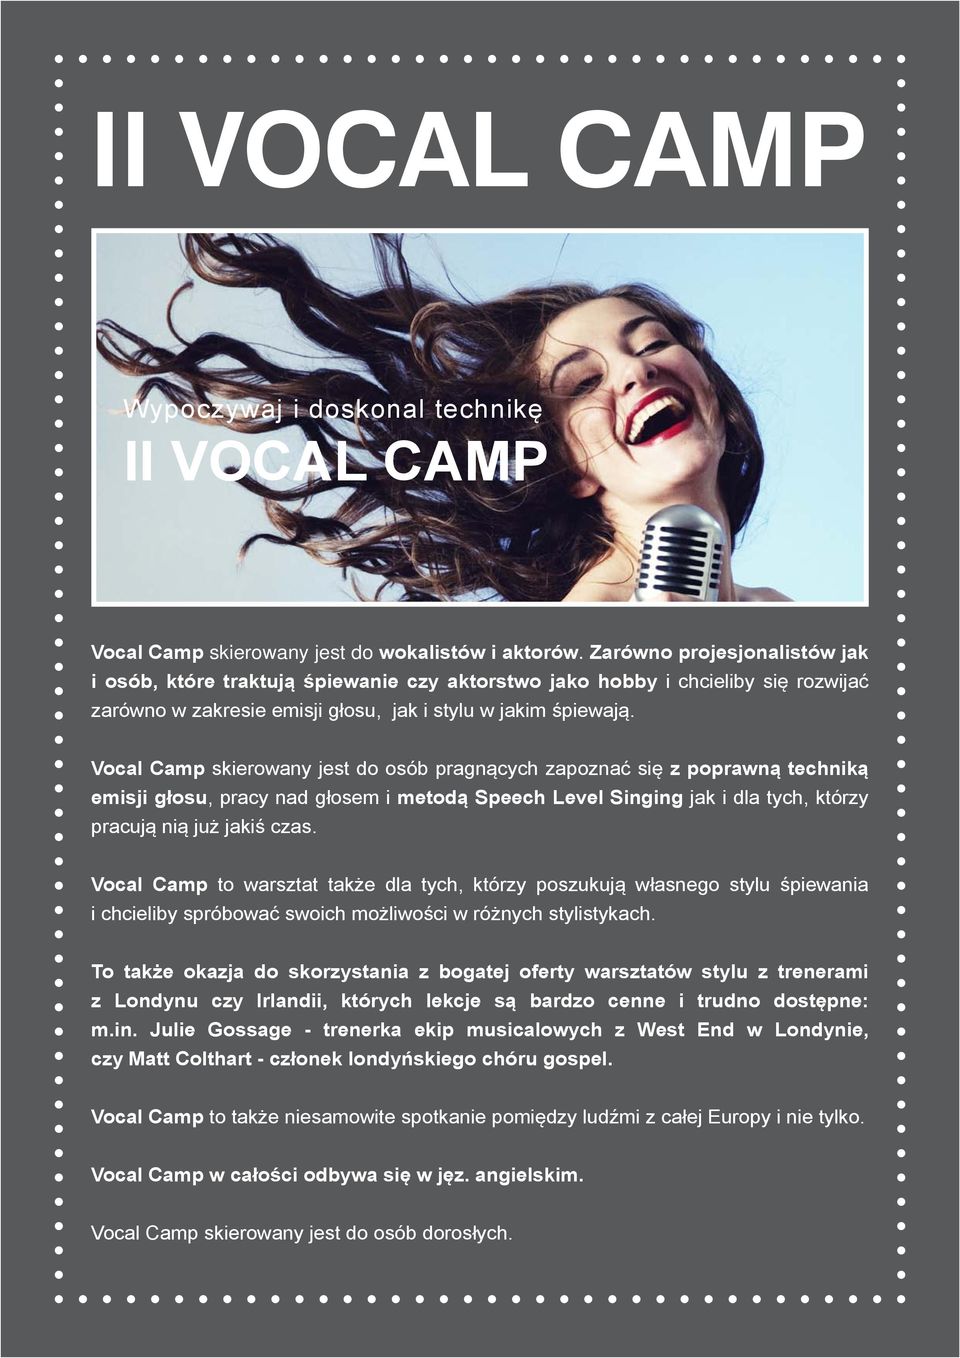 Vocal Camp skierowany jest do osób pragnących zapoznać się z poprawną techniką emisji głosu, pracy nad głosem i metodą Speech Level Singing jak i dla tych, którzy pracują nią już jakiś czas.